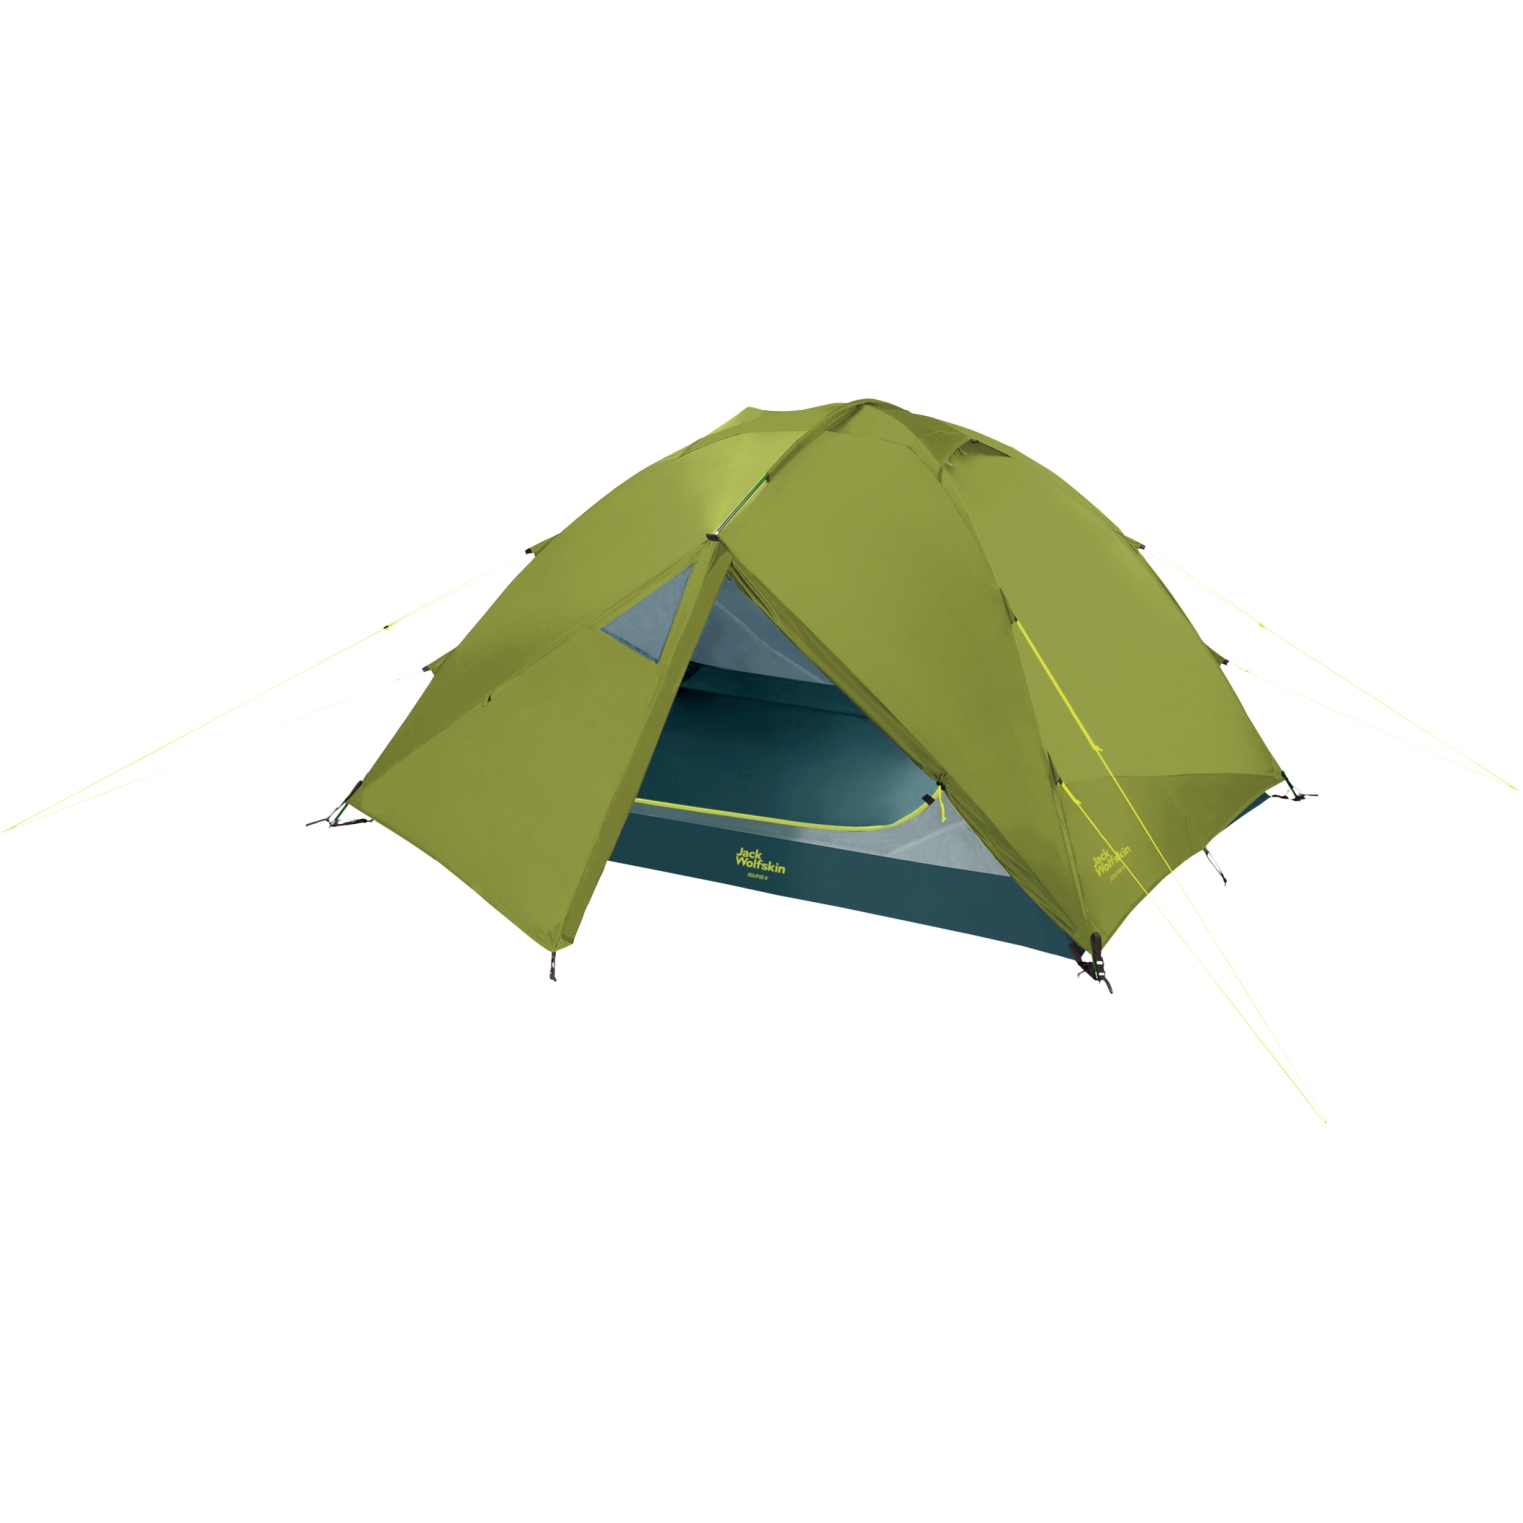 Immagine prodotto da Jack Wolfskin Tenda Campeggio - Eclipse II - ginkgo green